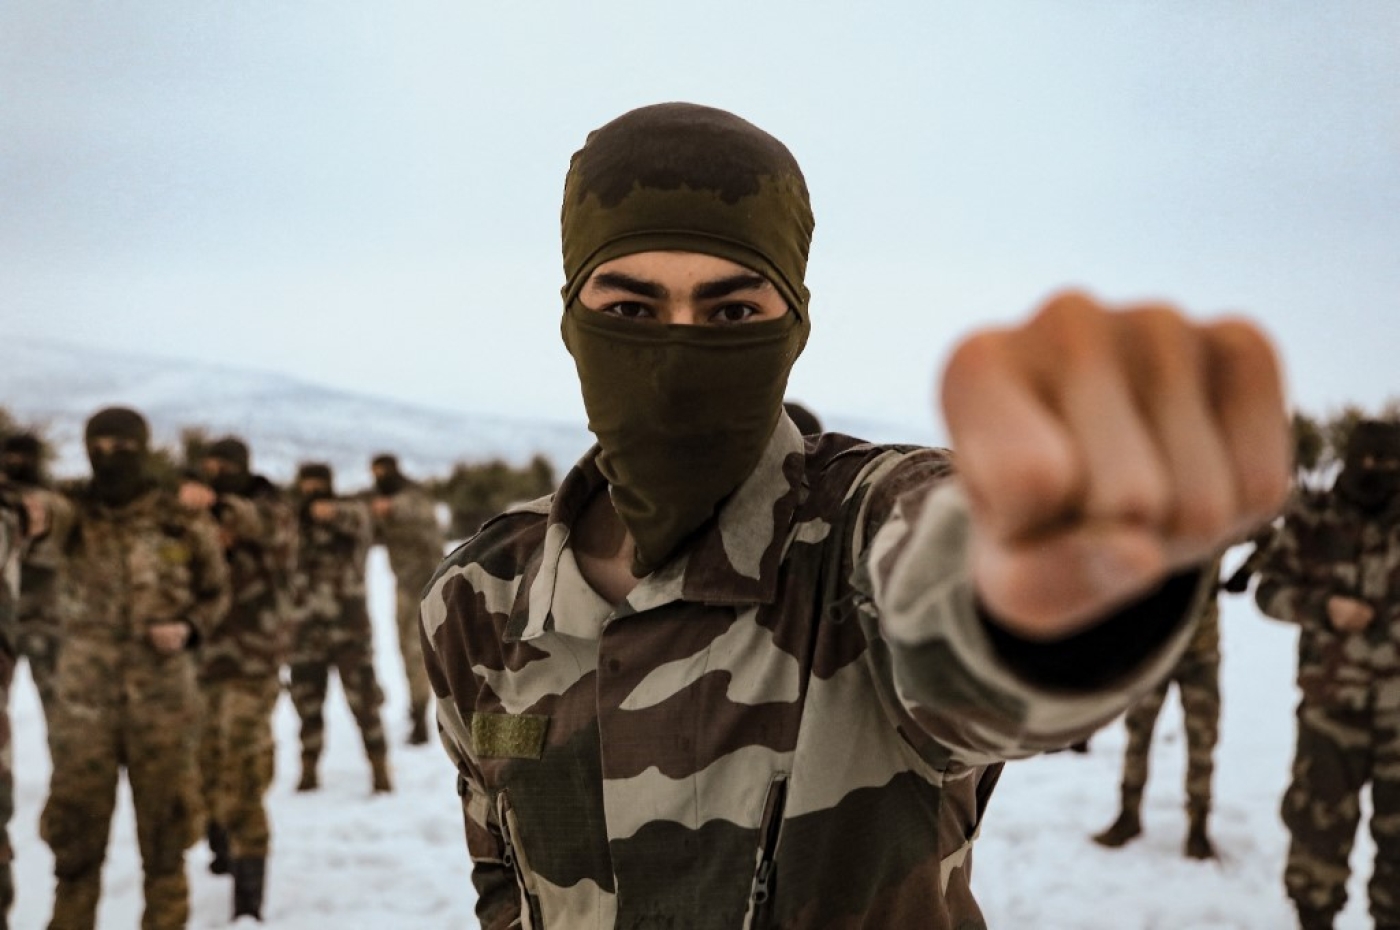 Des combattants syriens participent à un entraînement militaire dans une base enneigée de la région d’Afrin, dans la campagne du nord-ouest de la province d’Alep, le 26 janvier 2022 (AFP/Bakr Alkasem)